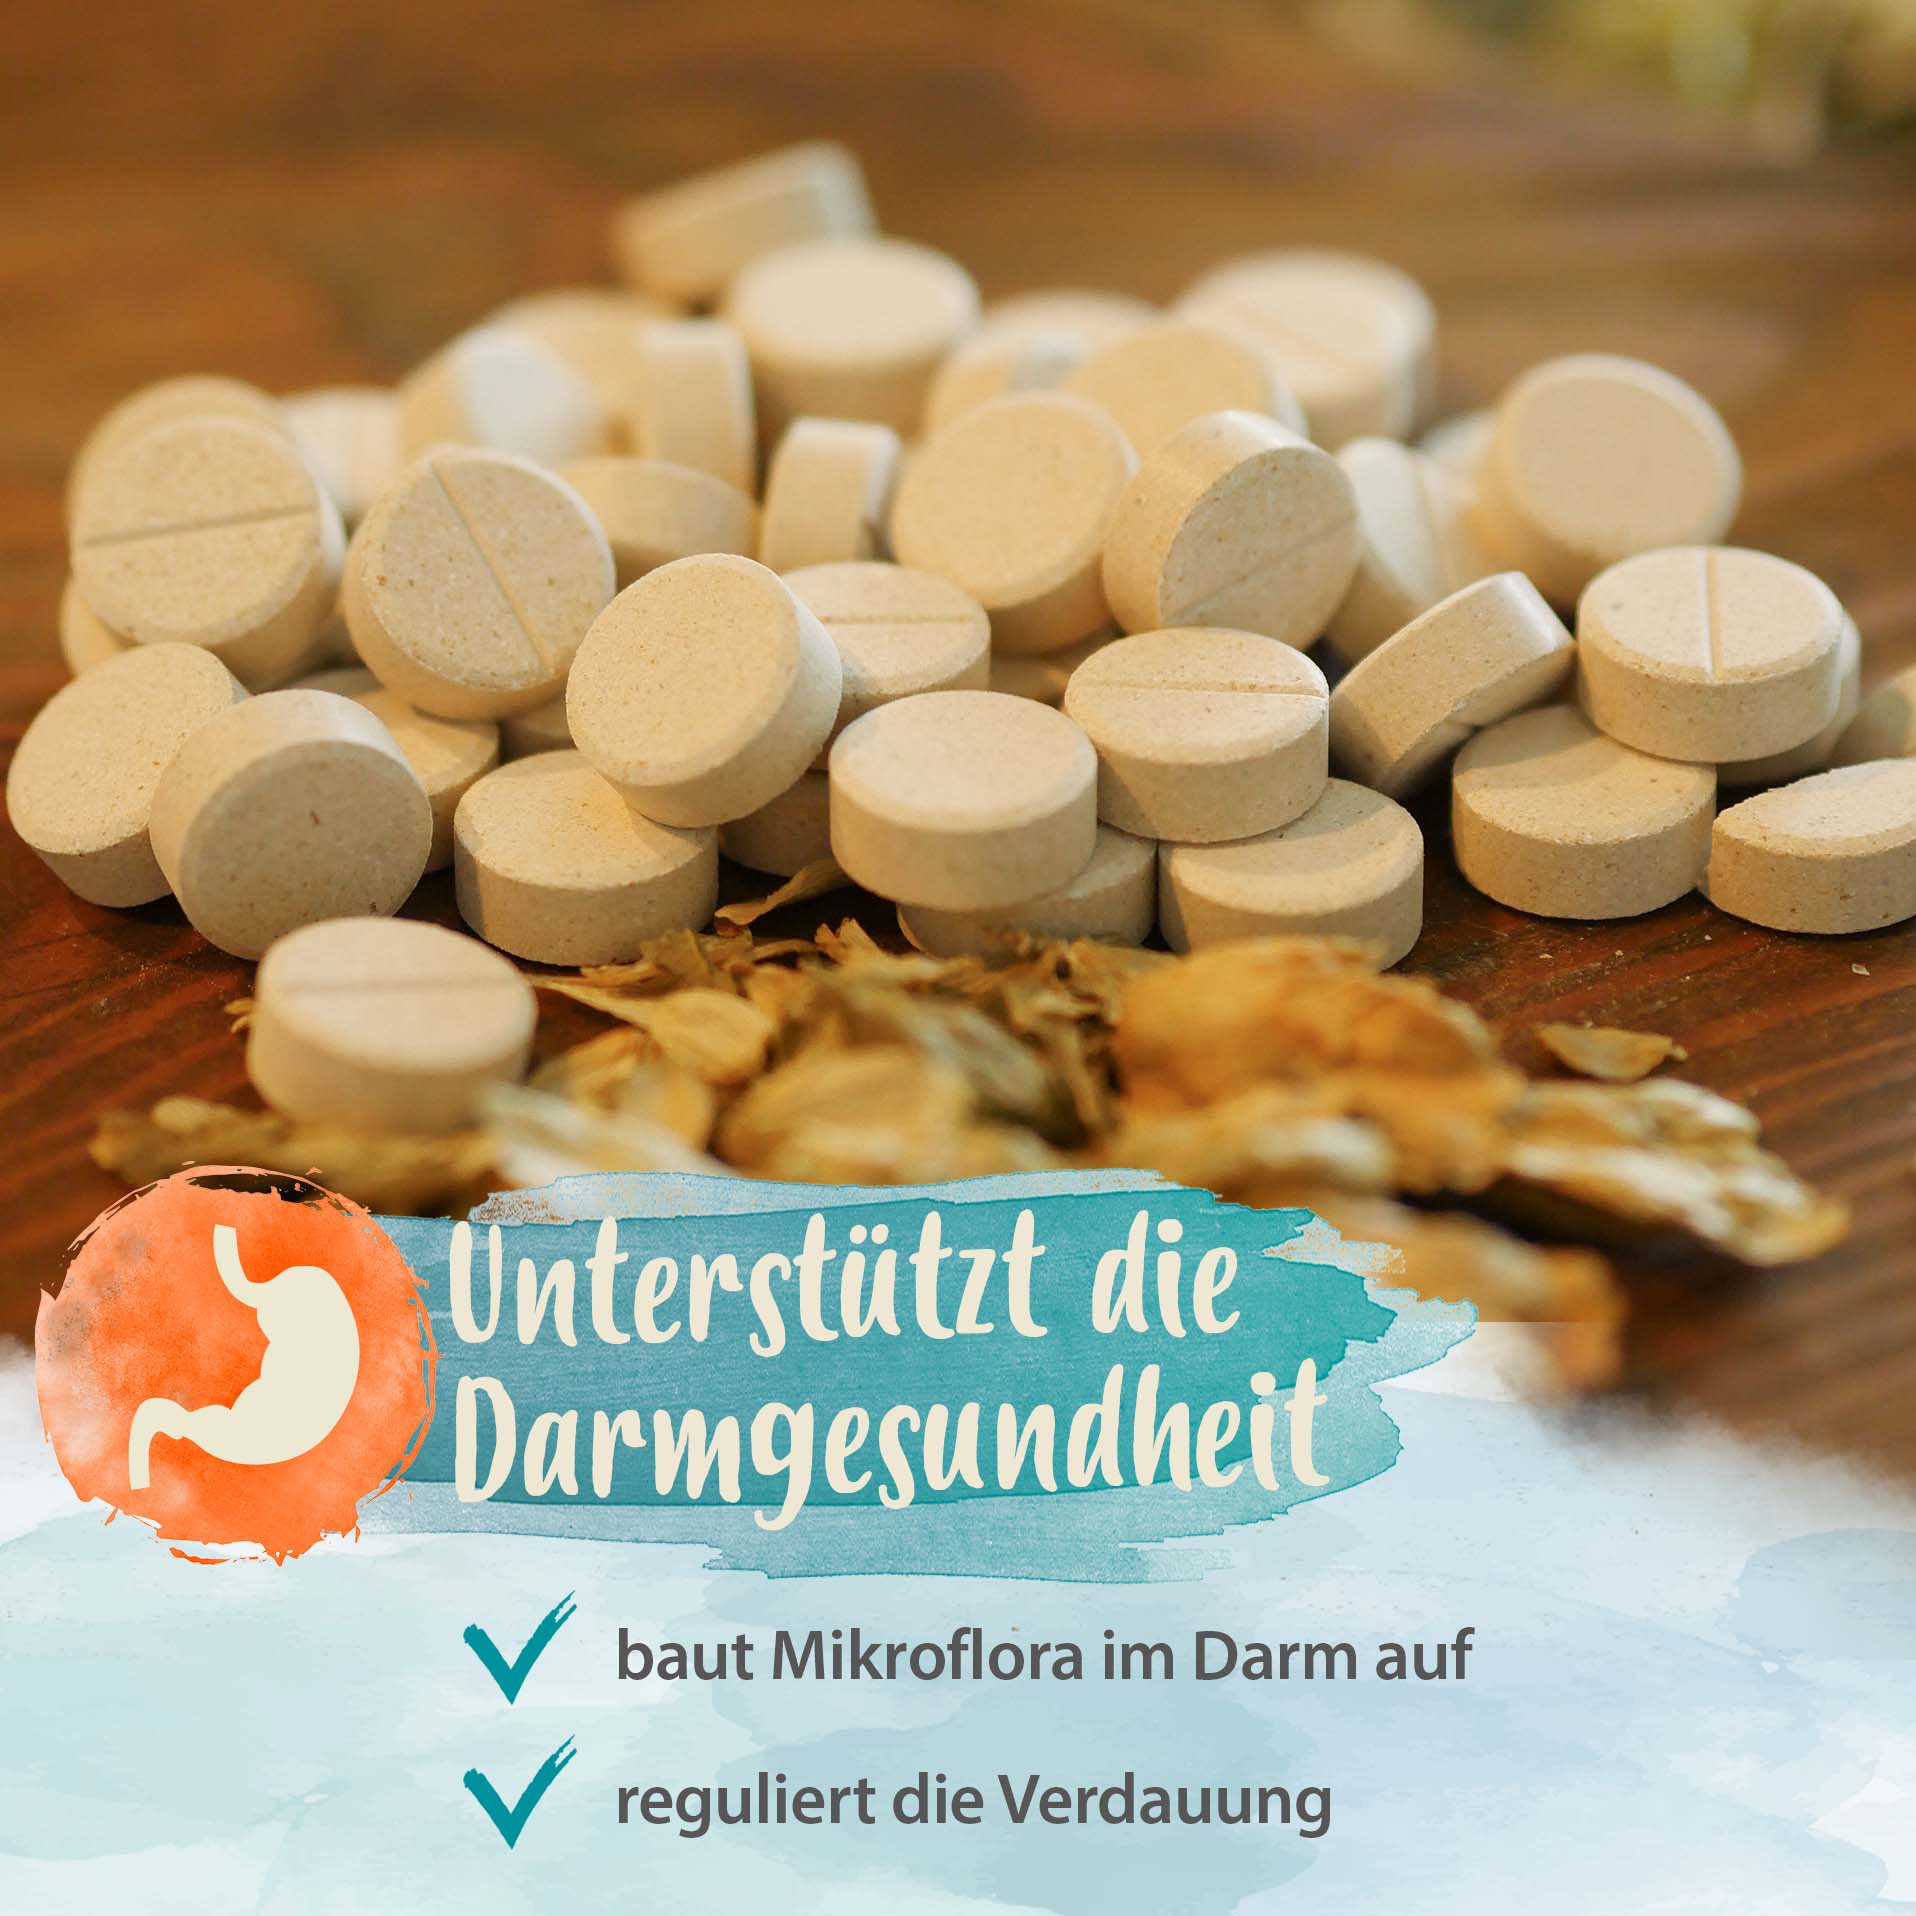 IdaPlus Darmbiotic Tabletten für regulierte Verdauung 180g